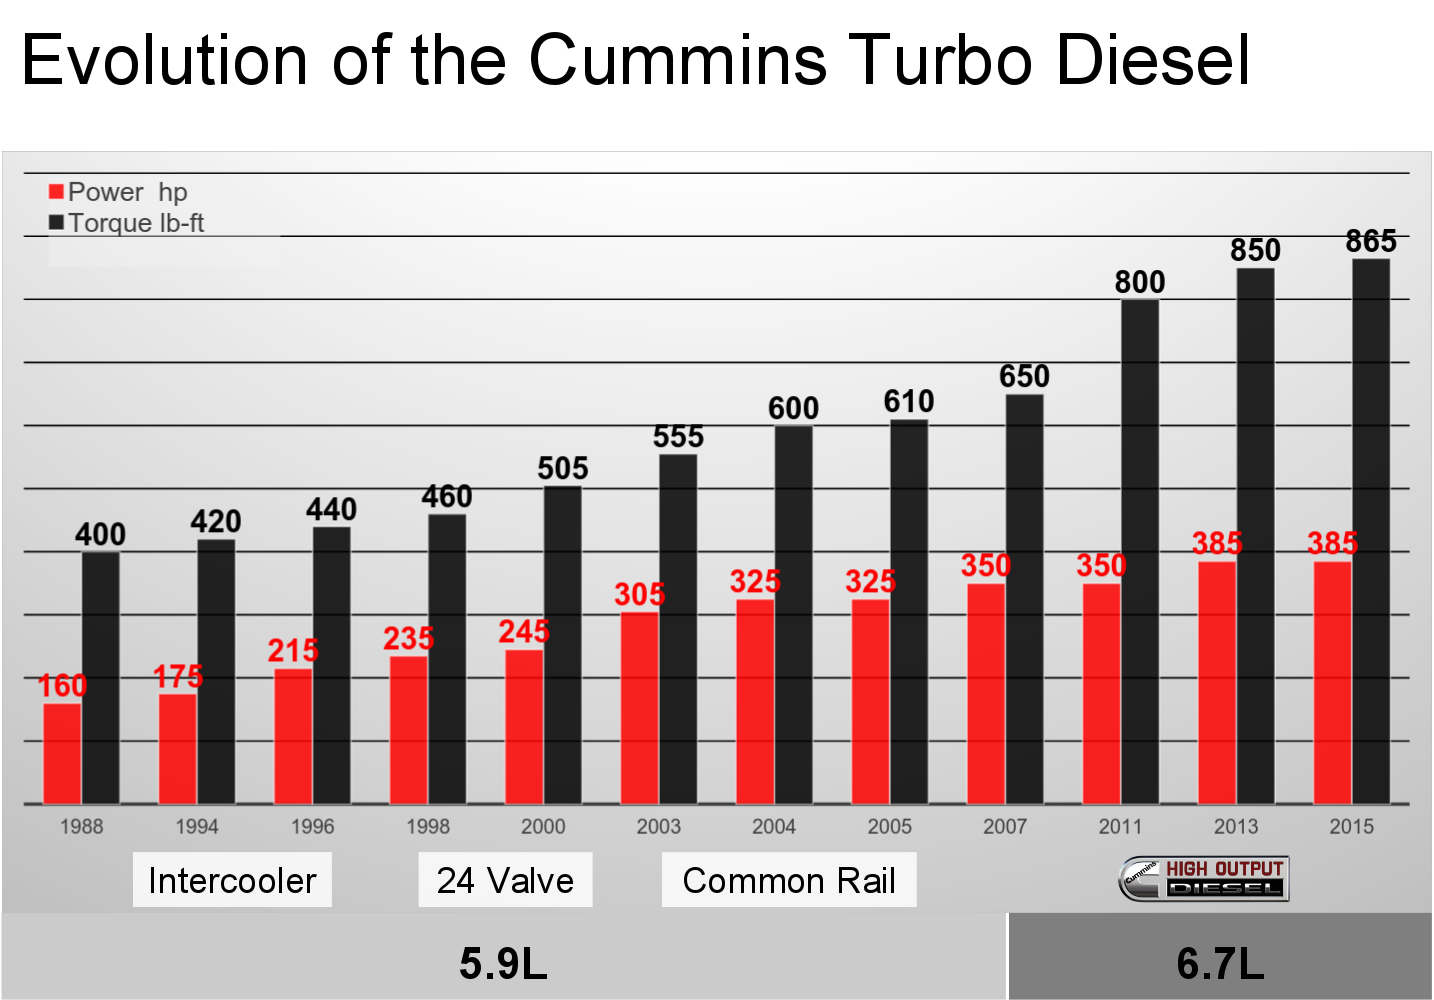 evolution-cummins-turbo-diesel-power